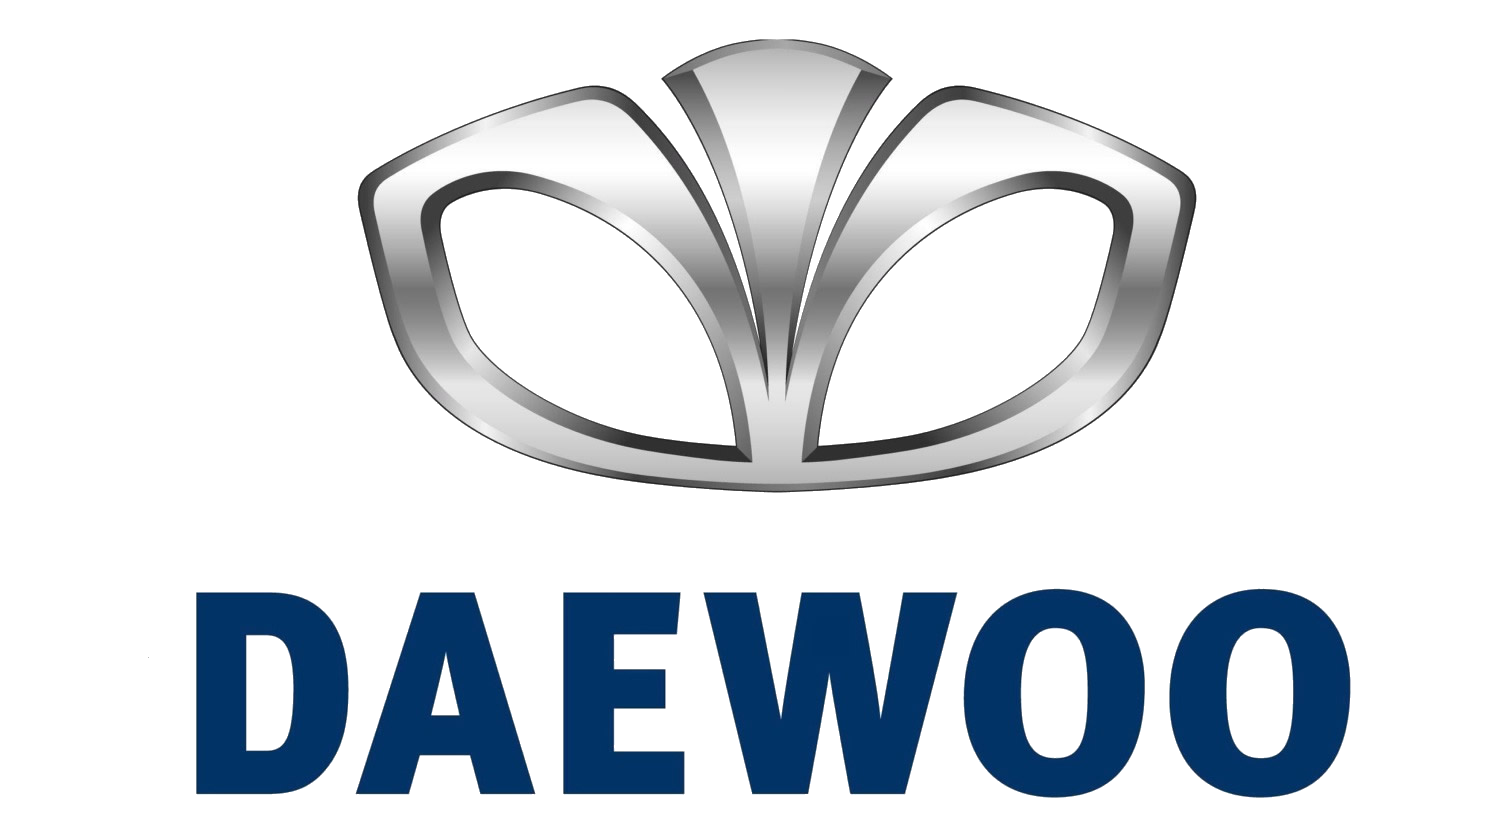 gm_daewoo_logo